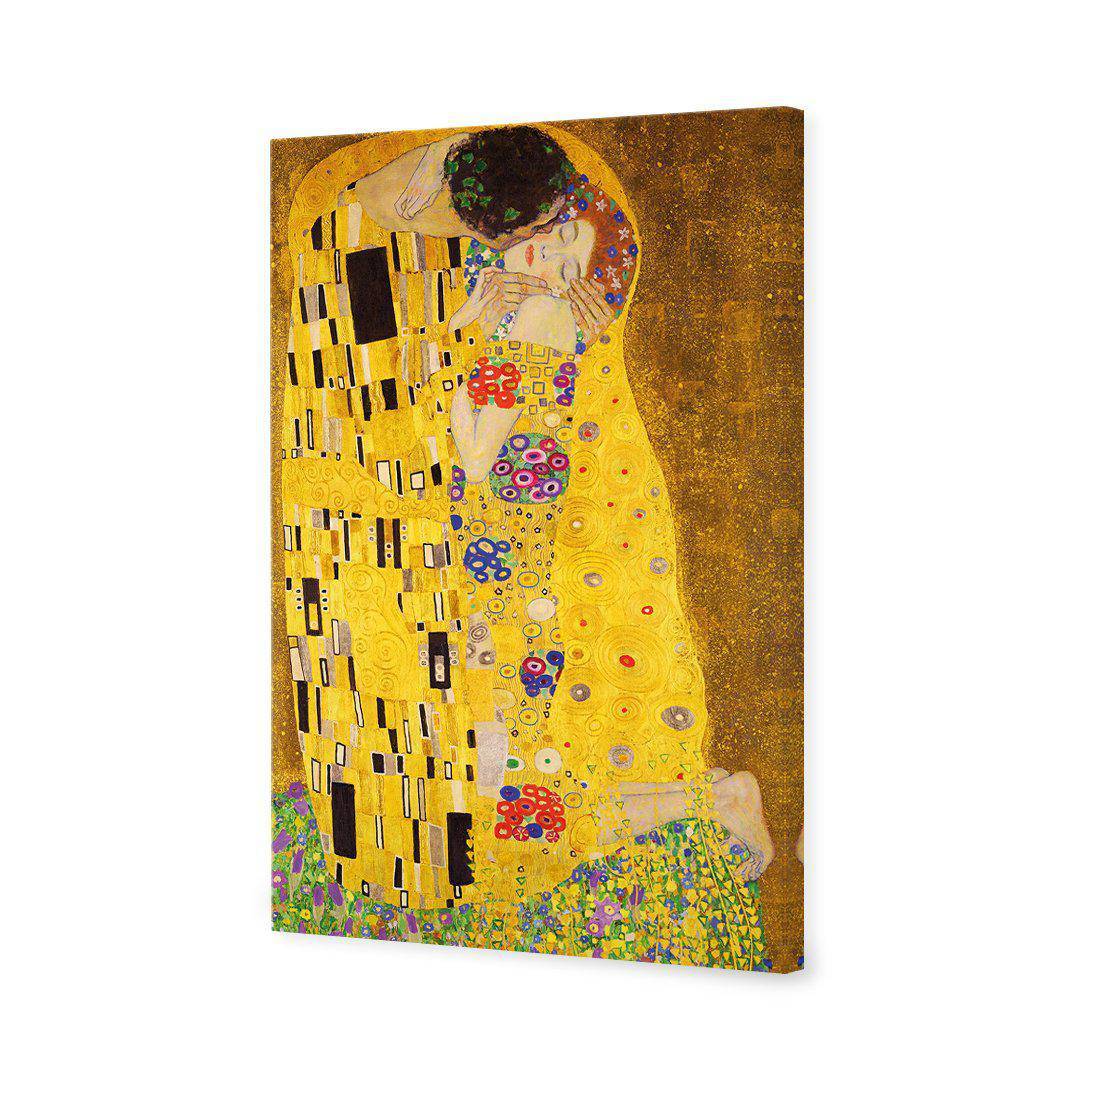 The Kiss by Klimt Canvas Art-Canvas-Wall Art Designs-45x30cm-Canvas - No Frame-Wall Art Designs